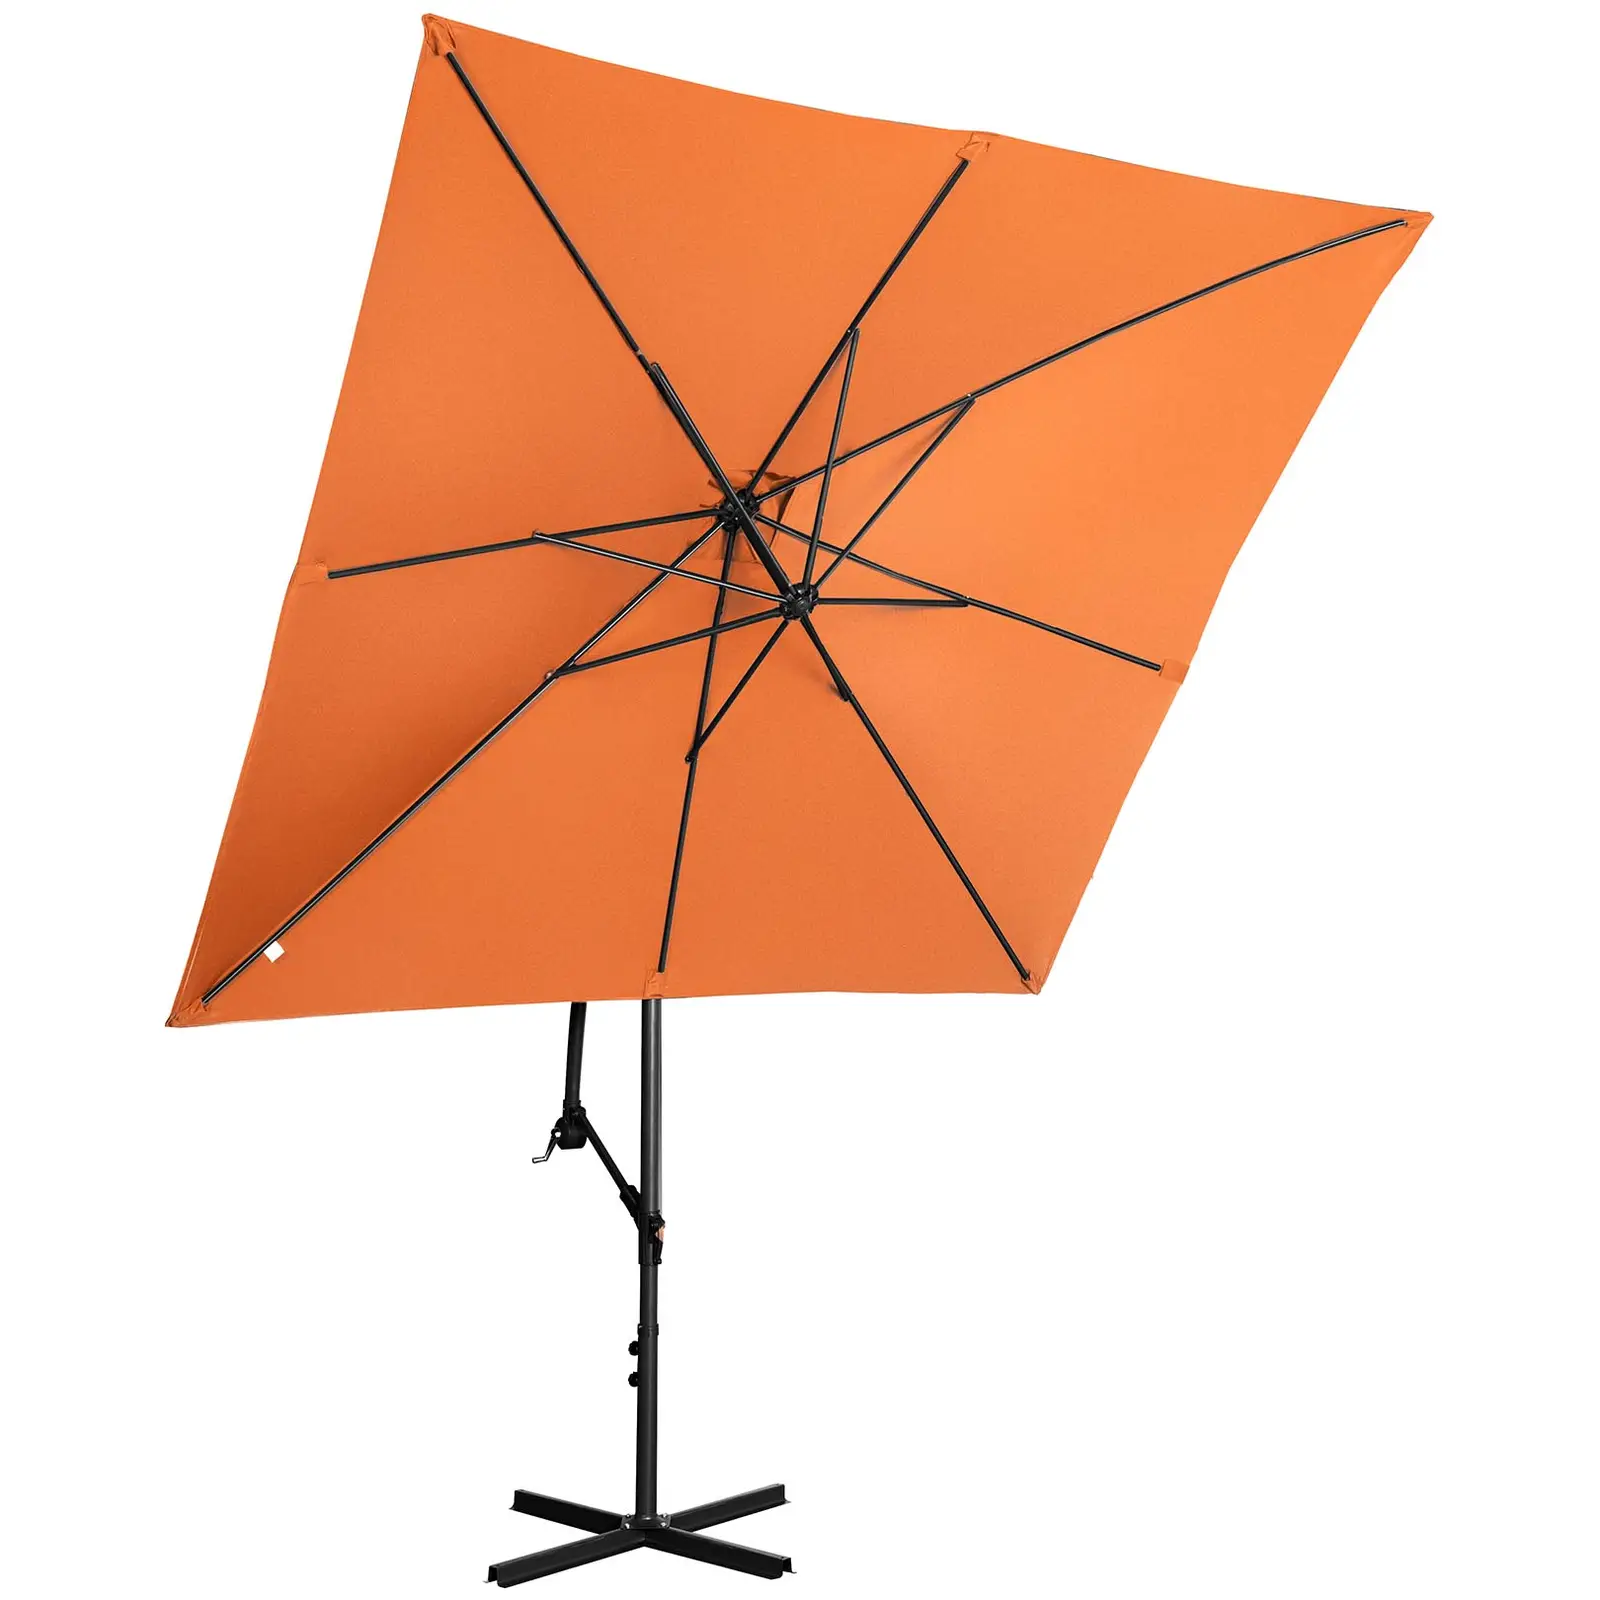 Ampelschirm - orange - rechteckig - 250 x 250 cm - neigbar